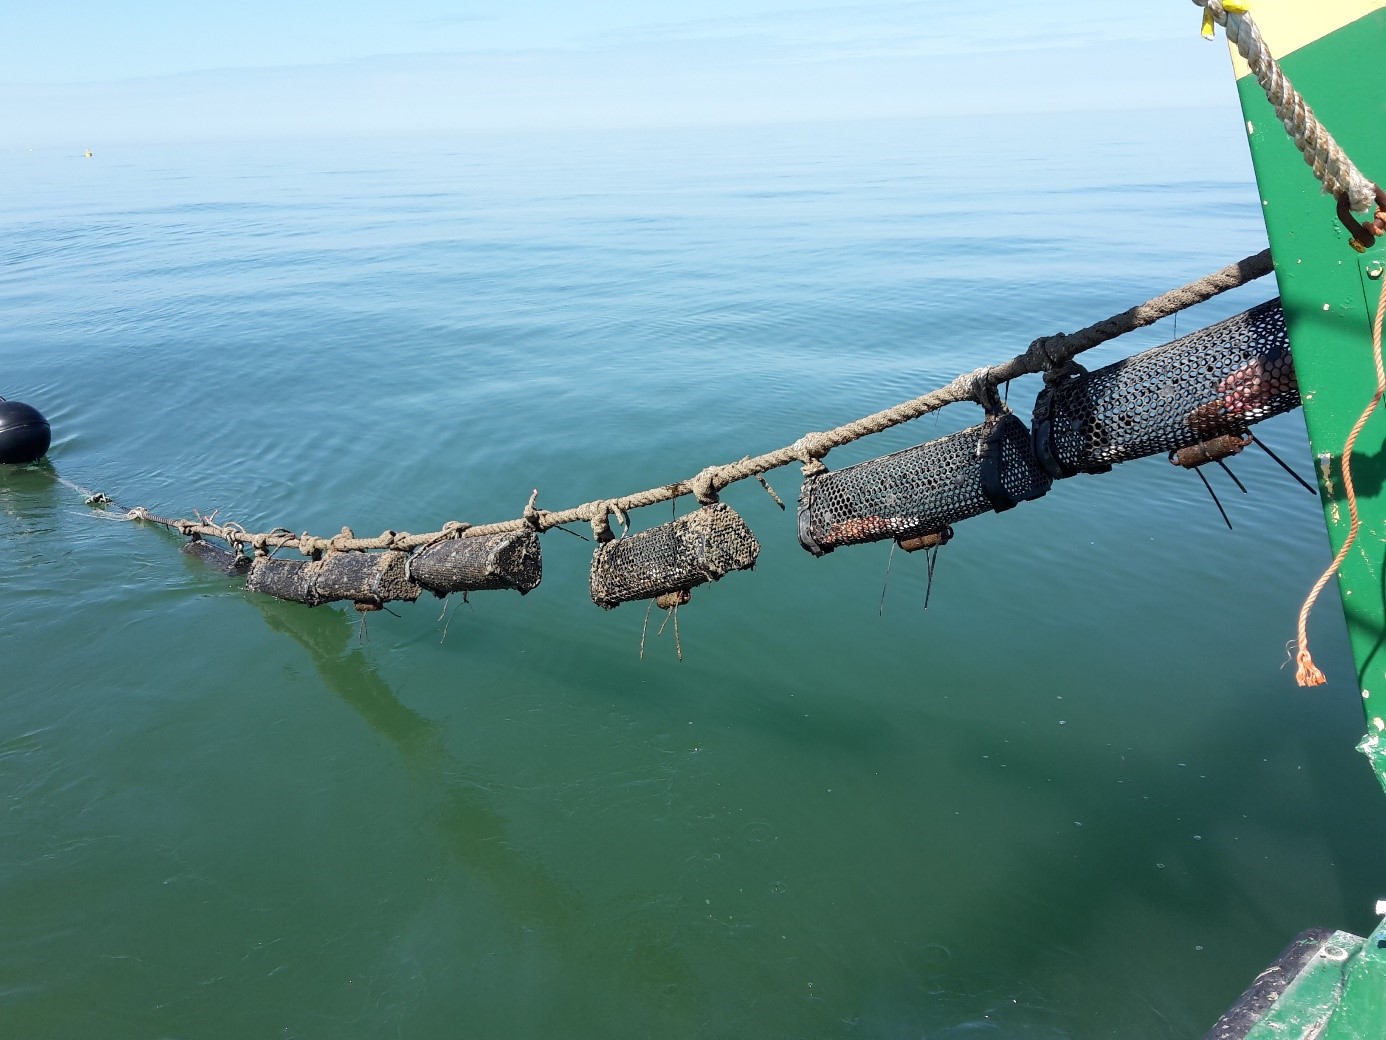 longline systeem: kabel onder waterlijn tss boeien met gevulde sokken met schelpdieren